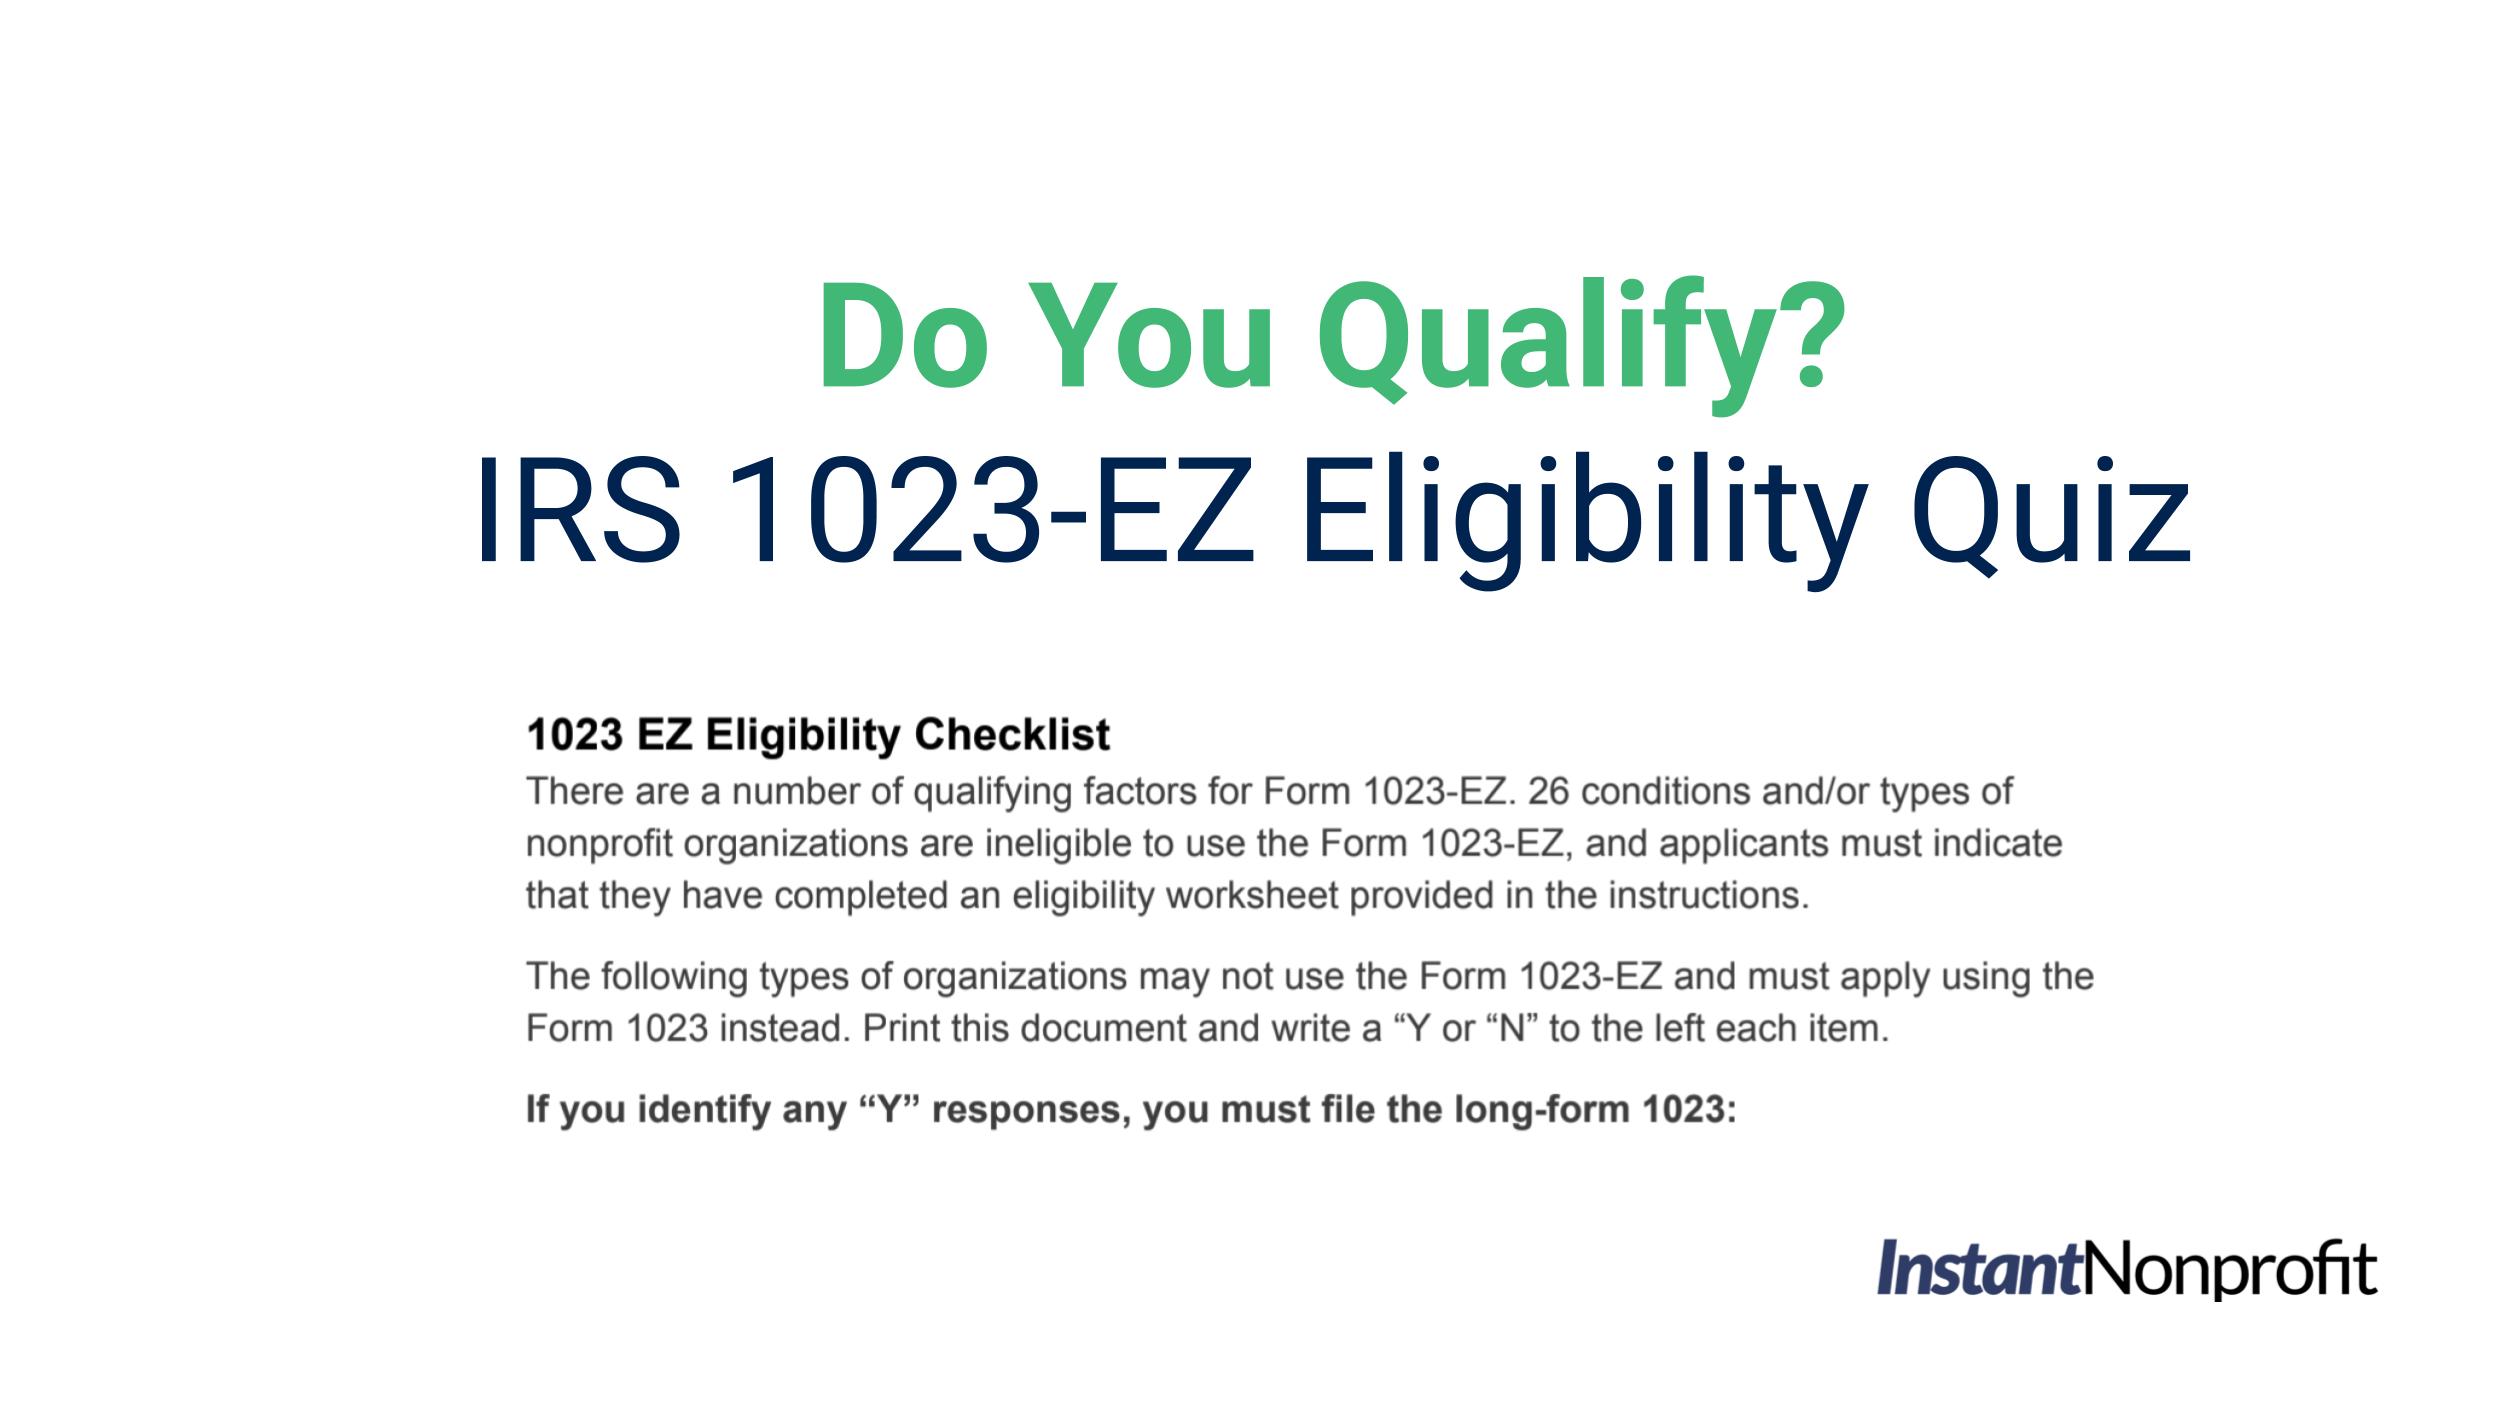 IRS 1023-EZ Eligibility Quiz